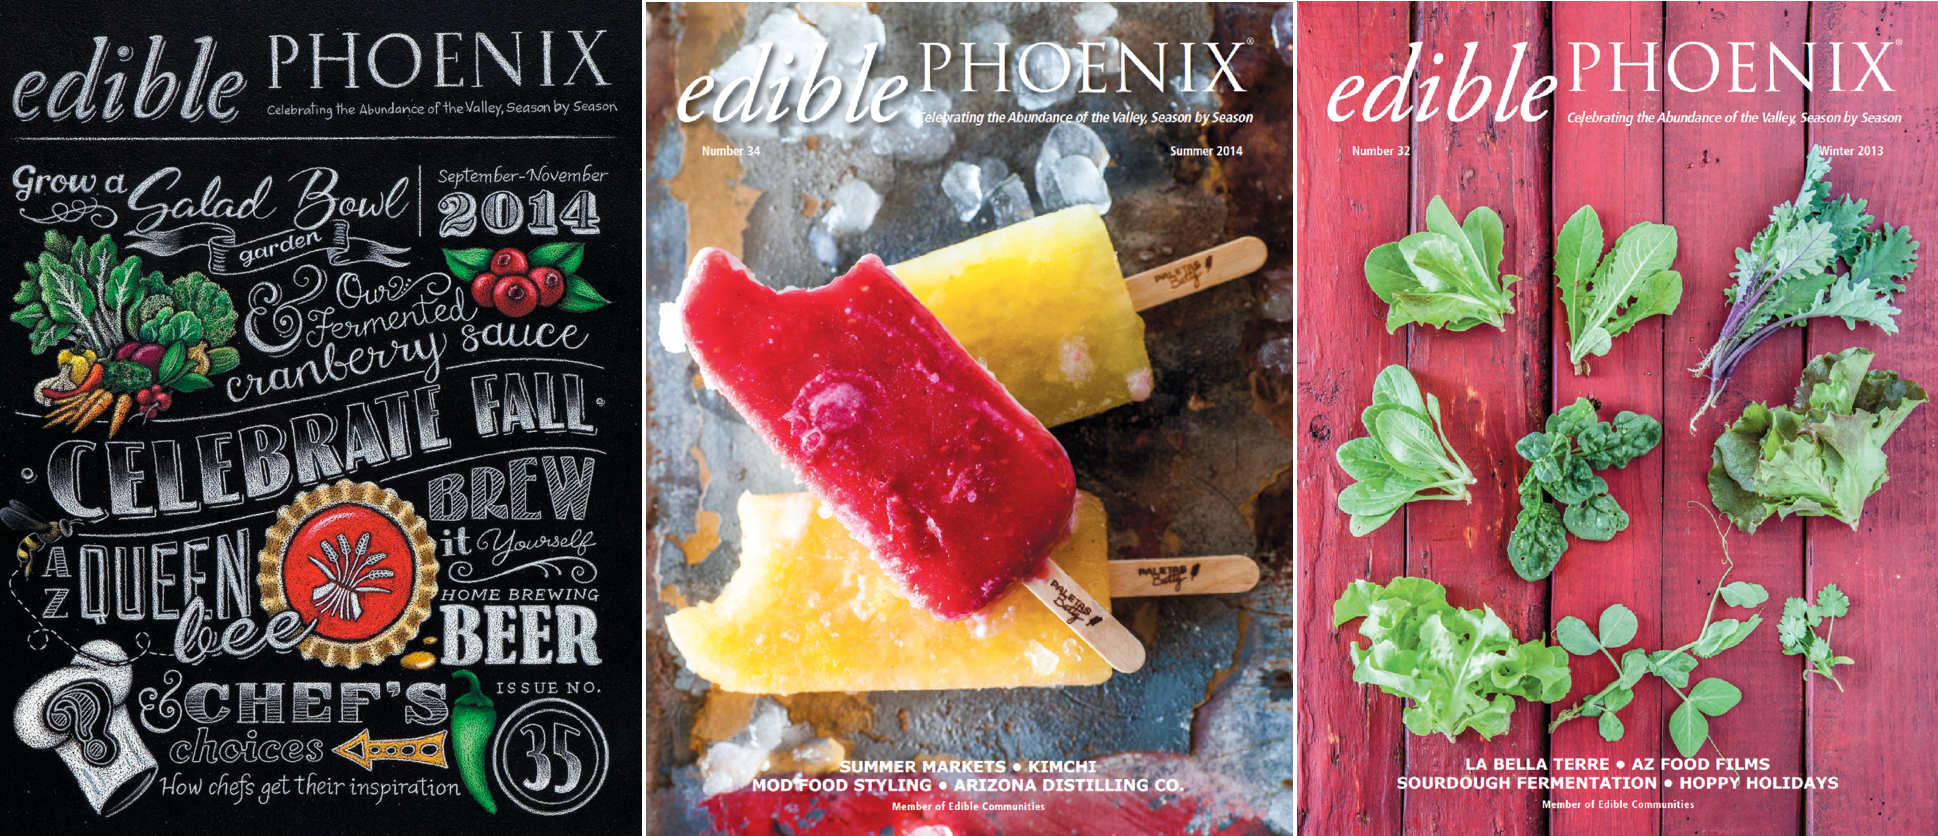 Edible Phoenix magazine covers